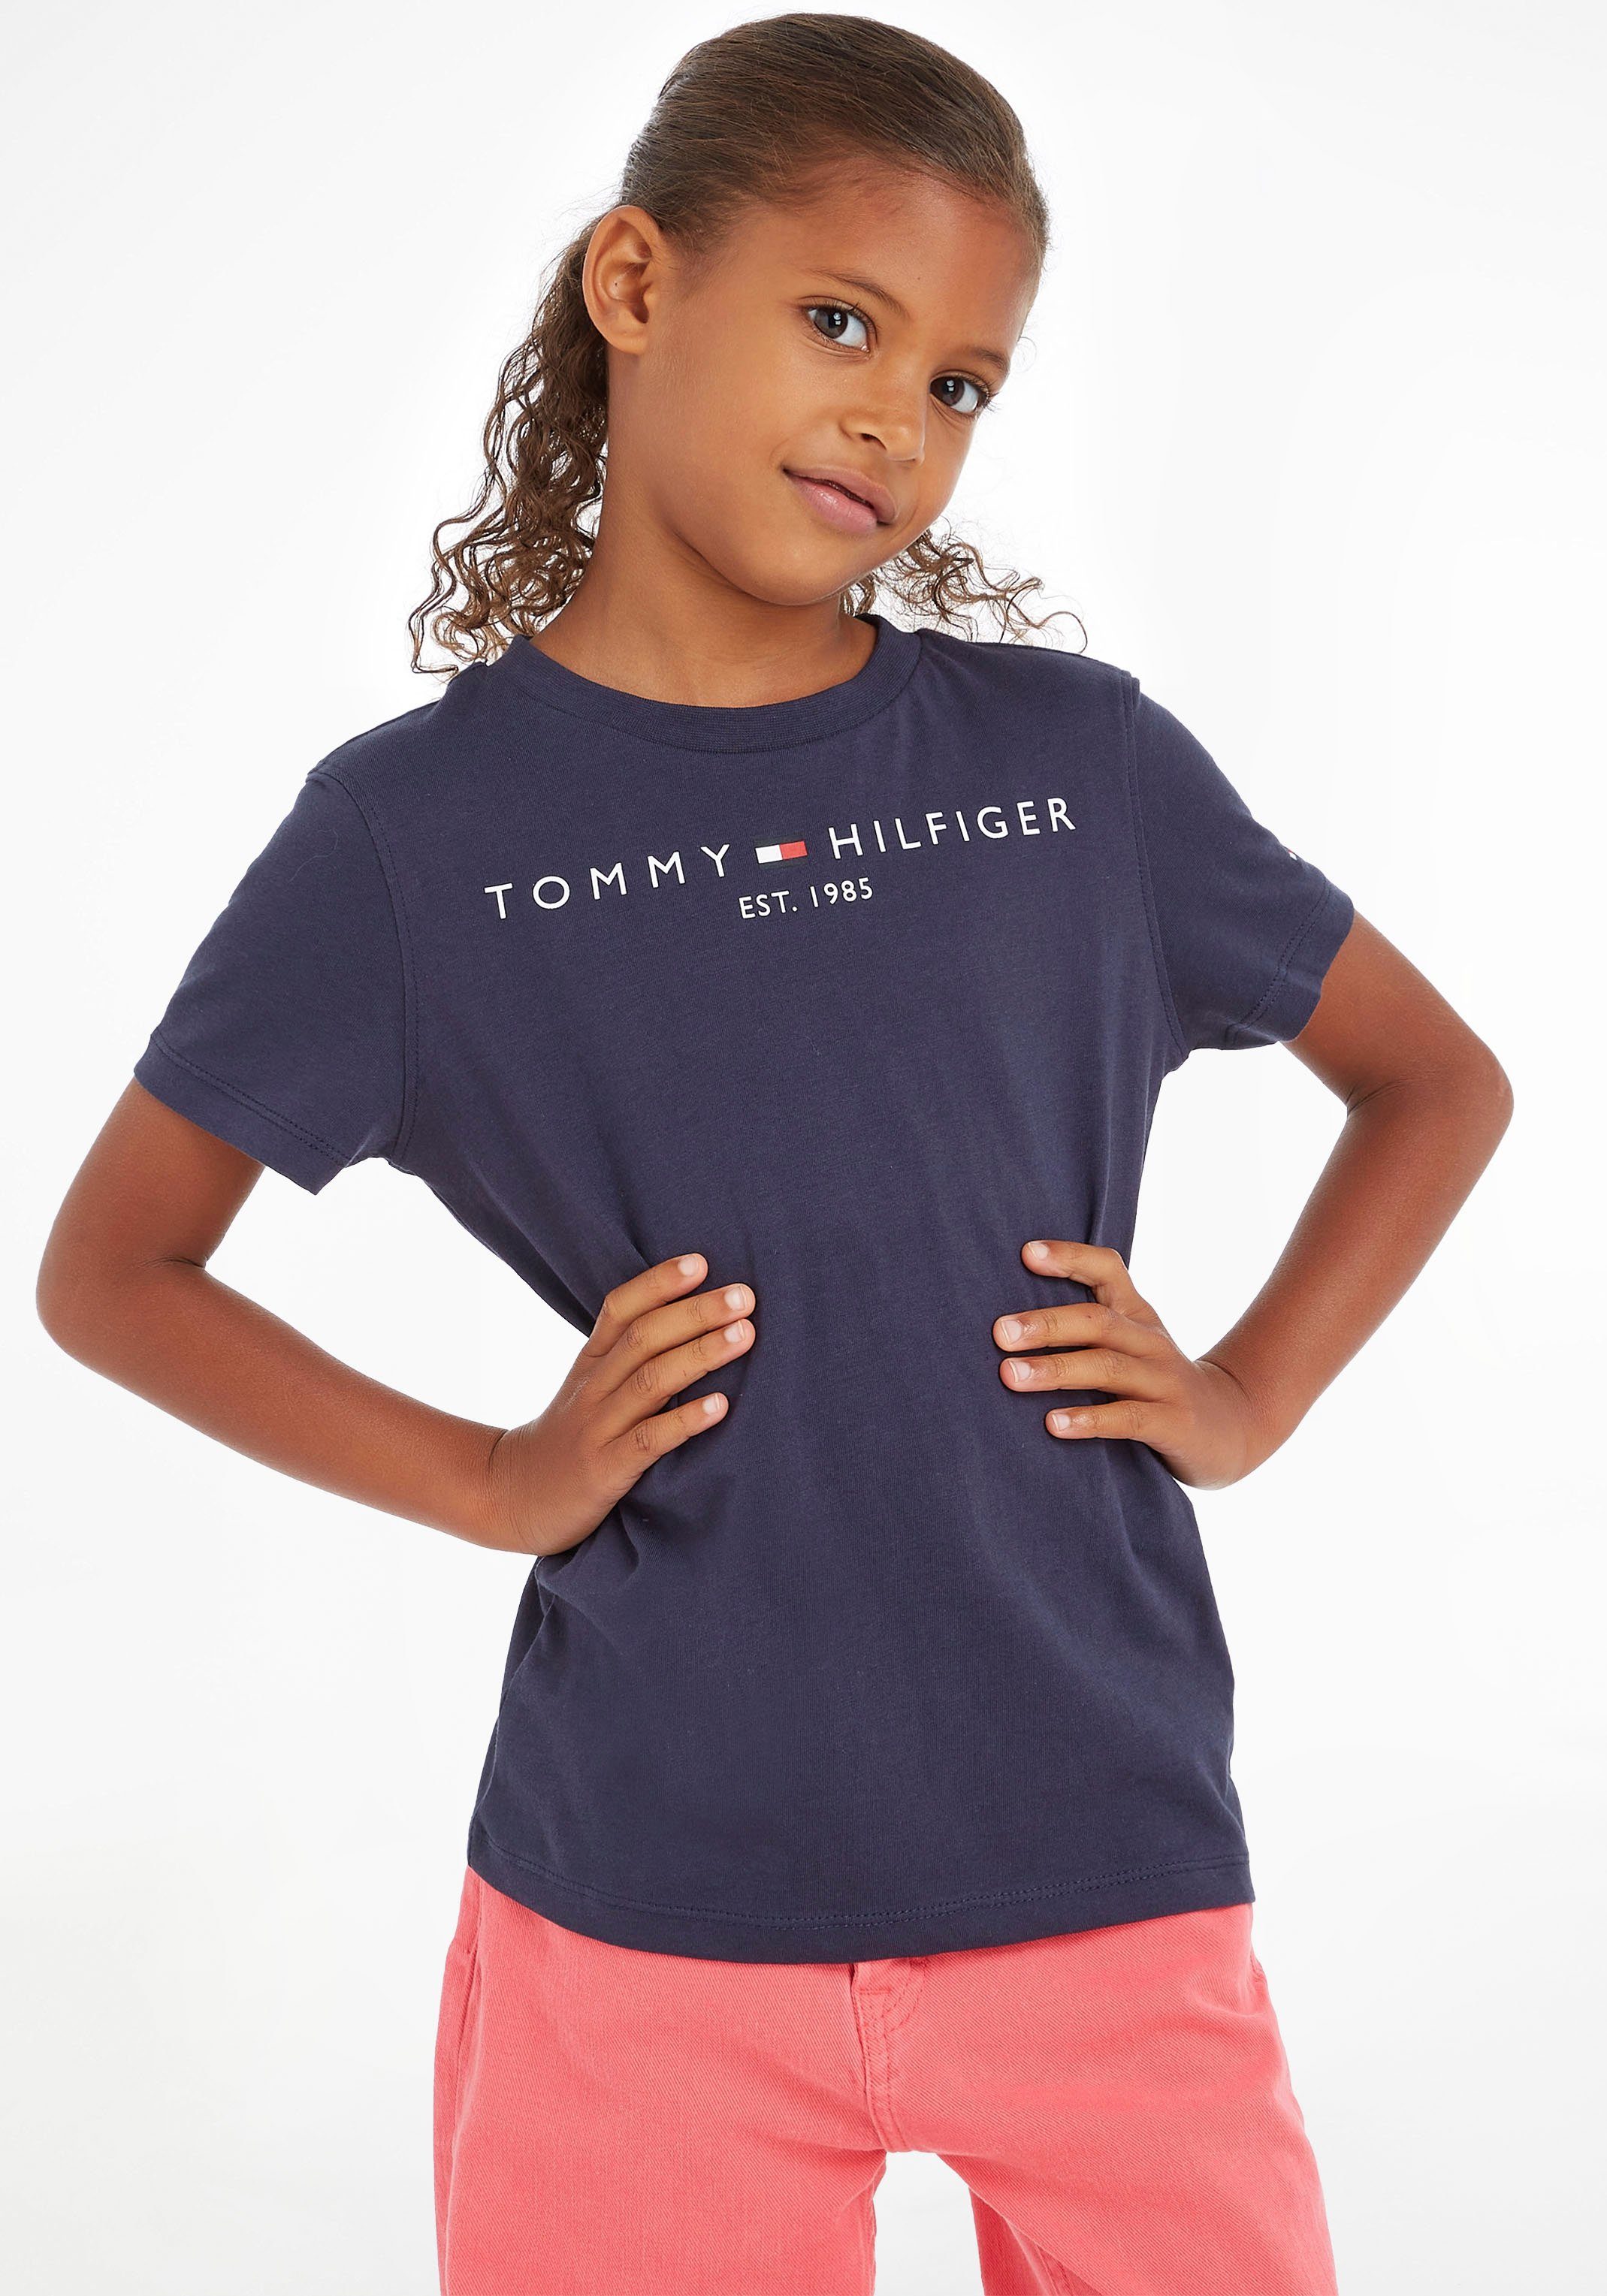 Tommy Hilfiger T-Shirt ESSENTIAL TEE Kinder Kids Junior MiniMe,für Jungen  und Mädchen, Hinten mit kleinem Flaglabel am Ausschnitt | Sport-T-Shirts